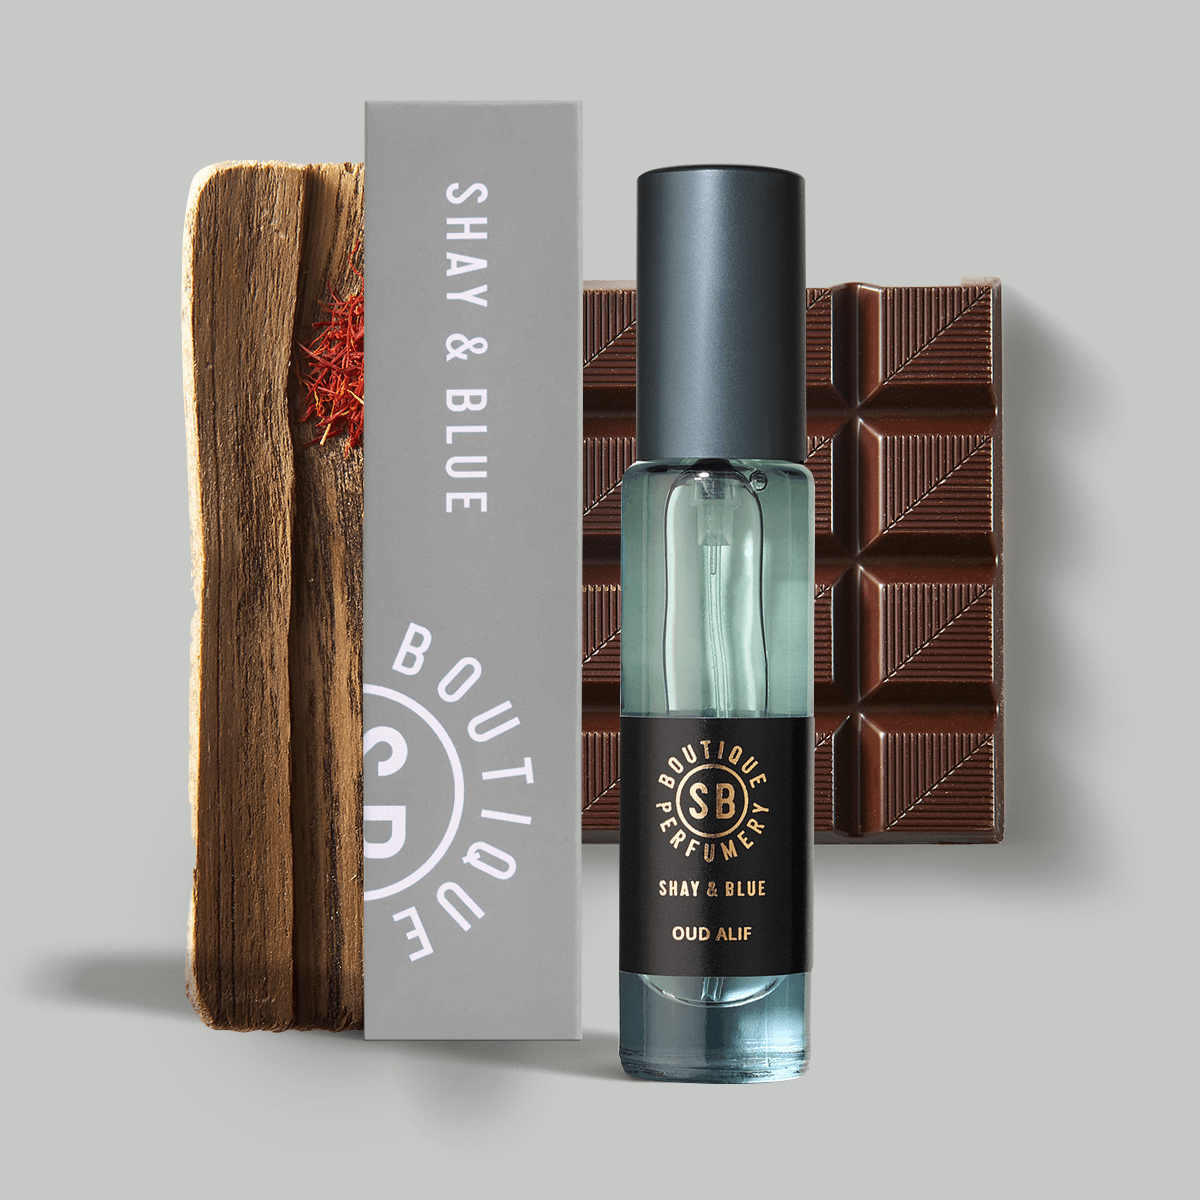 Oud Alif Fragrance Concentrate 10ml | Le meilleur oud agarwood relevé de chocolat noir, de safran et de patchouli sombre. | Shay & Blue - Parfum pour hommes et femmes - Clean All Gender Fragrance - Shay & Blue